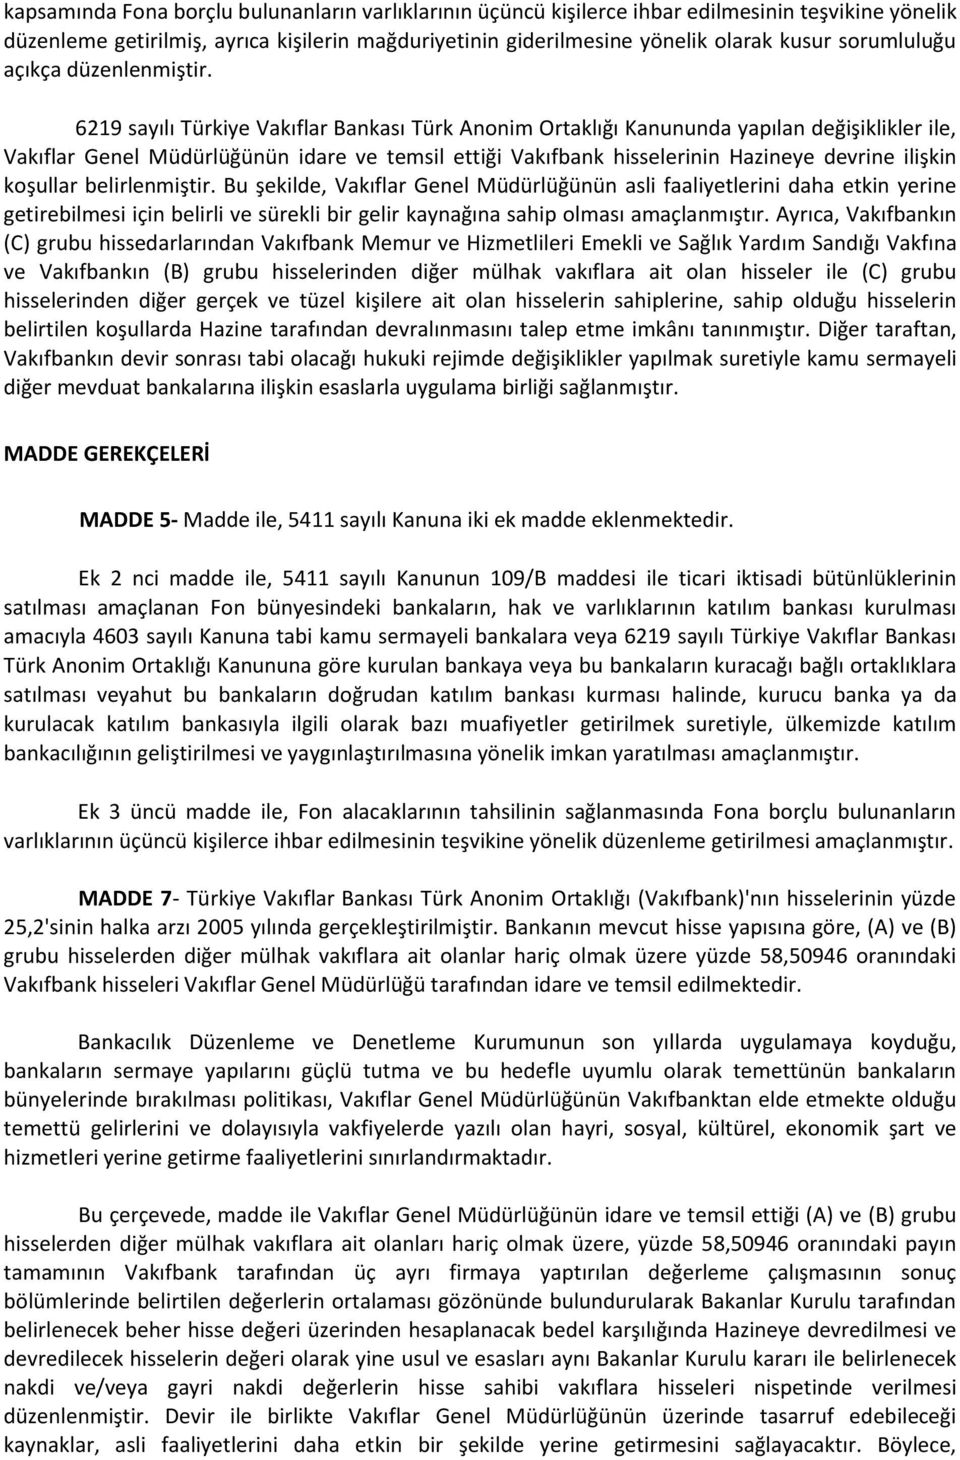 6219 sayılı Türkiye Vakıflar Bankası Türk Anonim Ortaklığı Kanununda yapılan değişiklikler ile, Vakıflar Genel Müdürlüğünün idare ve temsil ettiği Vakıfbank hisselerinin Hazineye devrine ilişkin